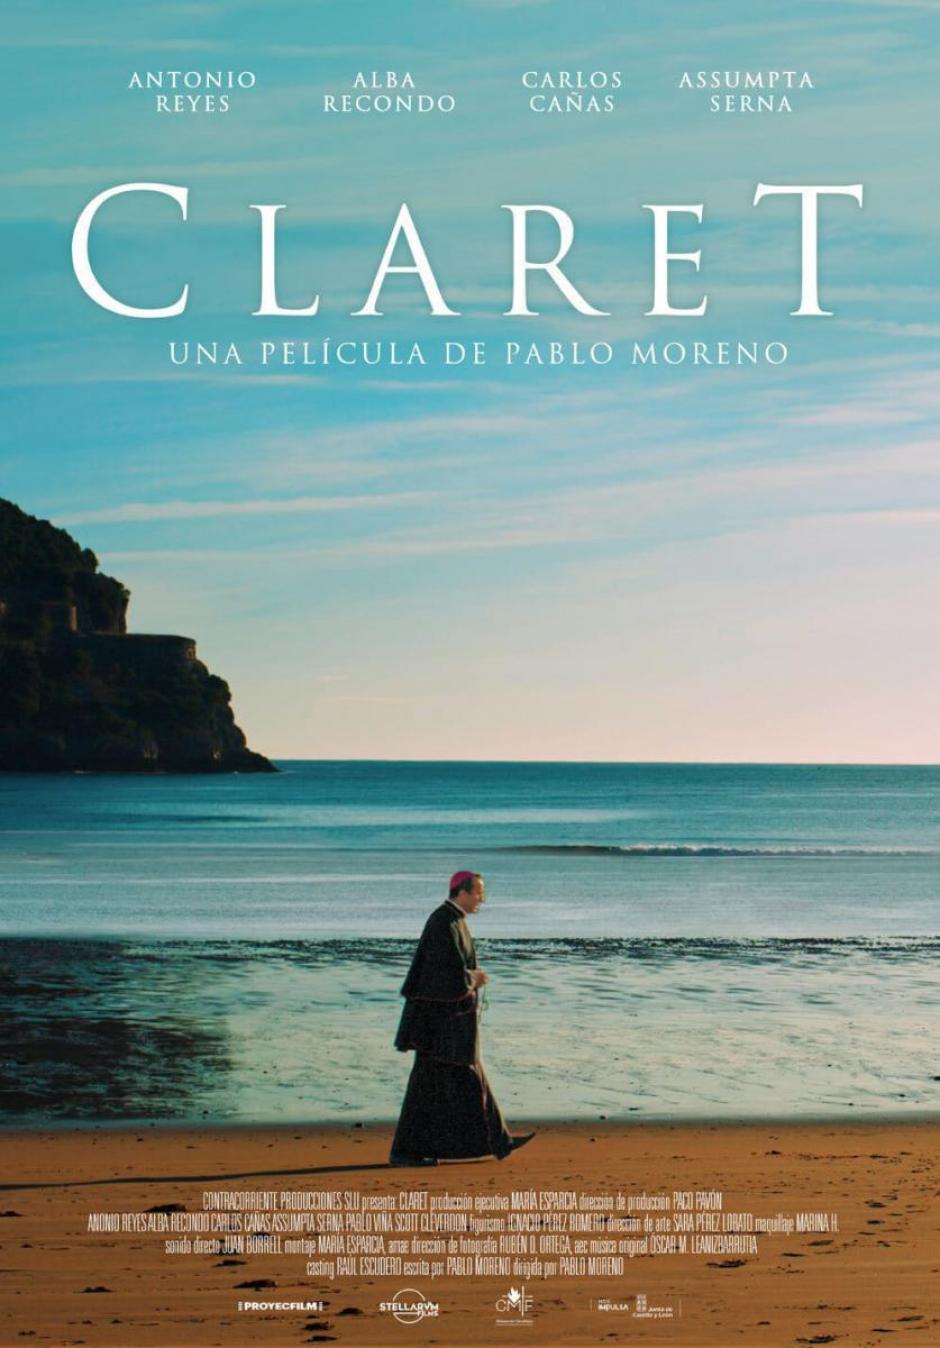 Póster promocional de la aclamada película de Pablo Moreno